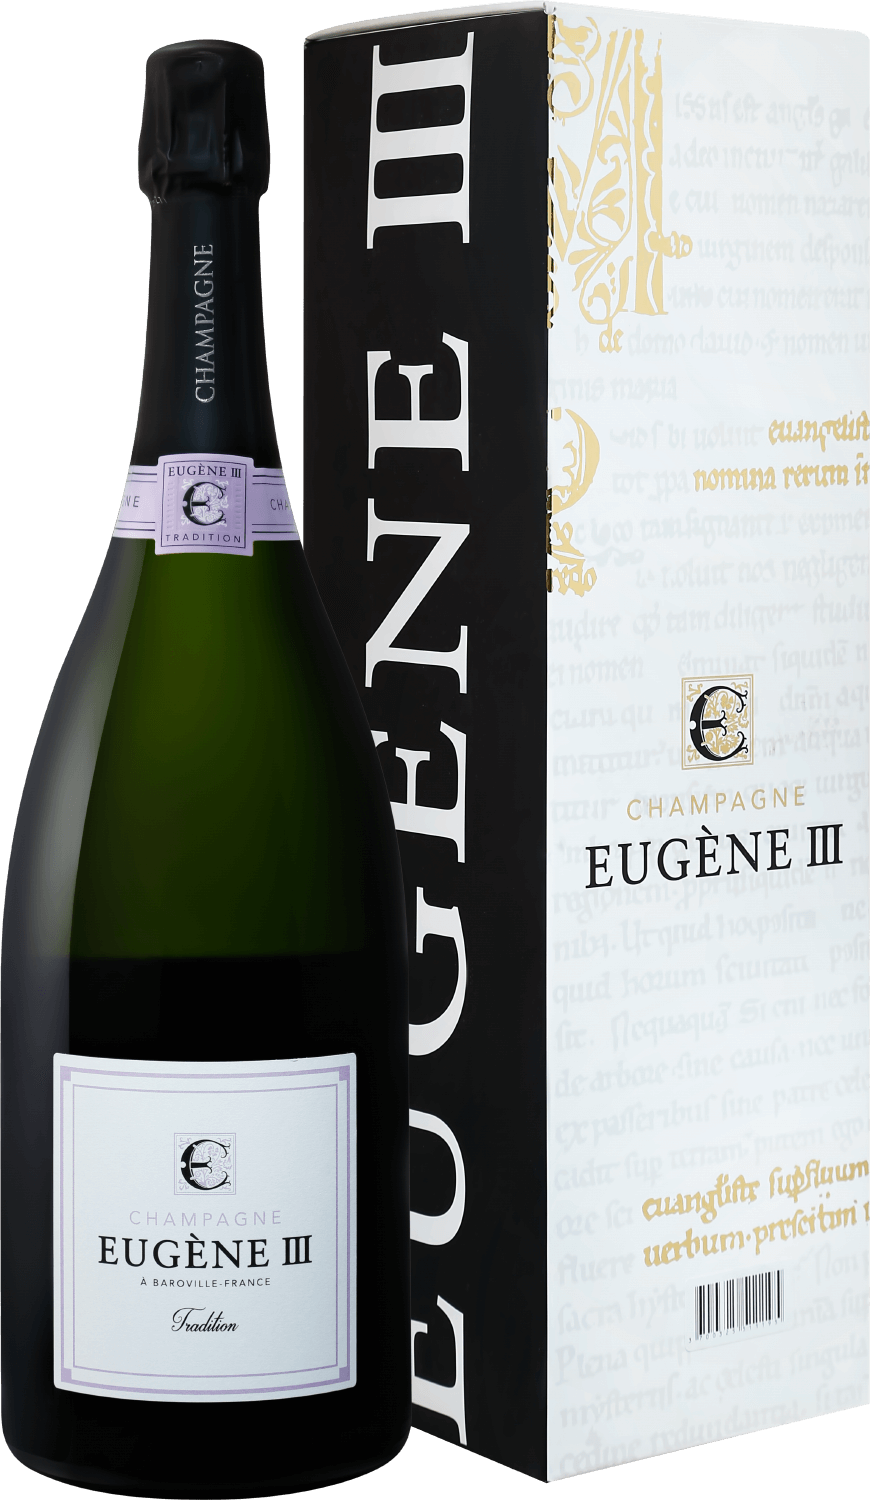 Eugene III Tradition Brut Champagne АOC Coopérative Vinicole de la Région de Baroville (gift box) eugene iii tradition brut champagne аoc coopérative vinicole de la région de baroville